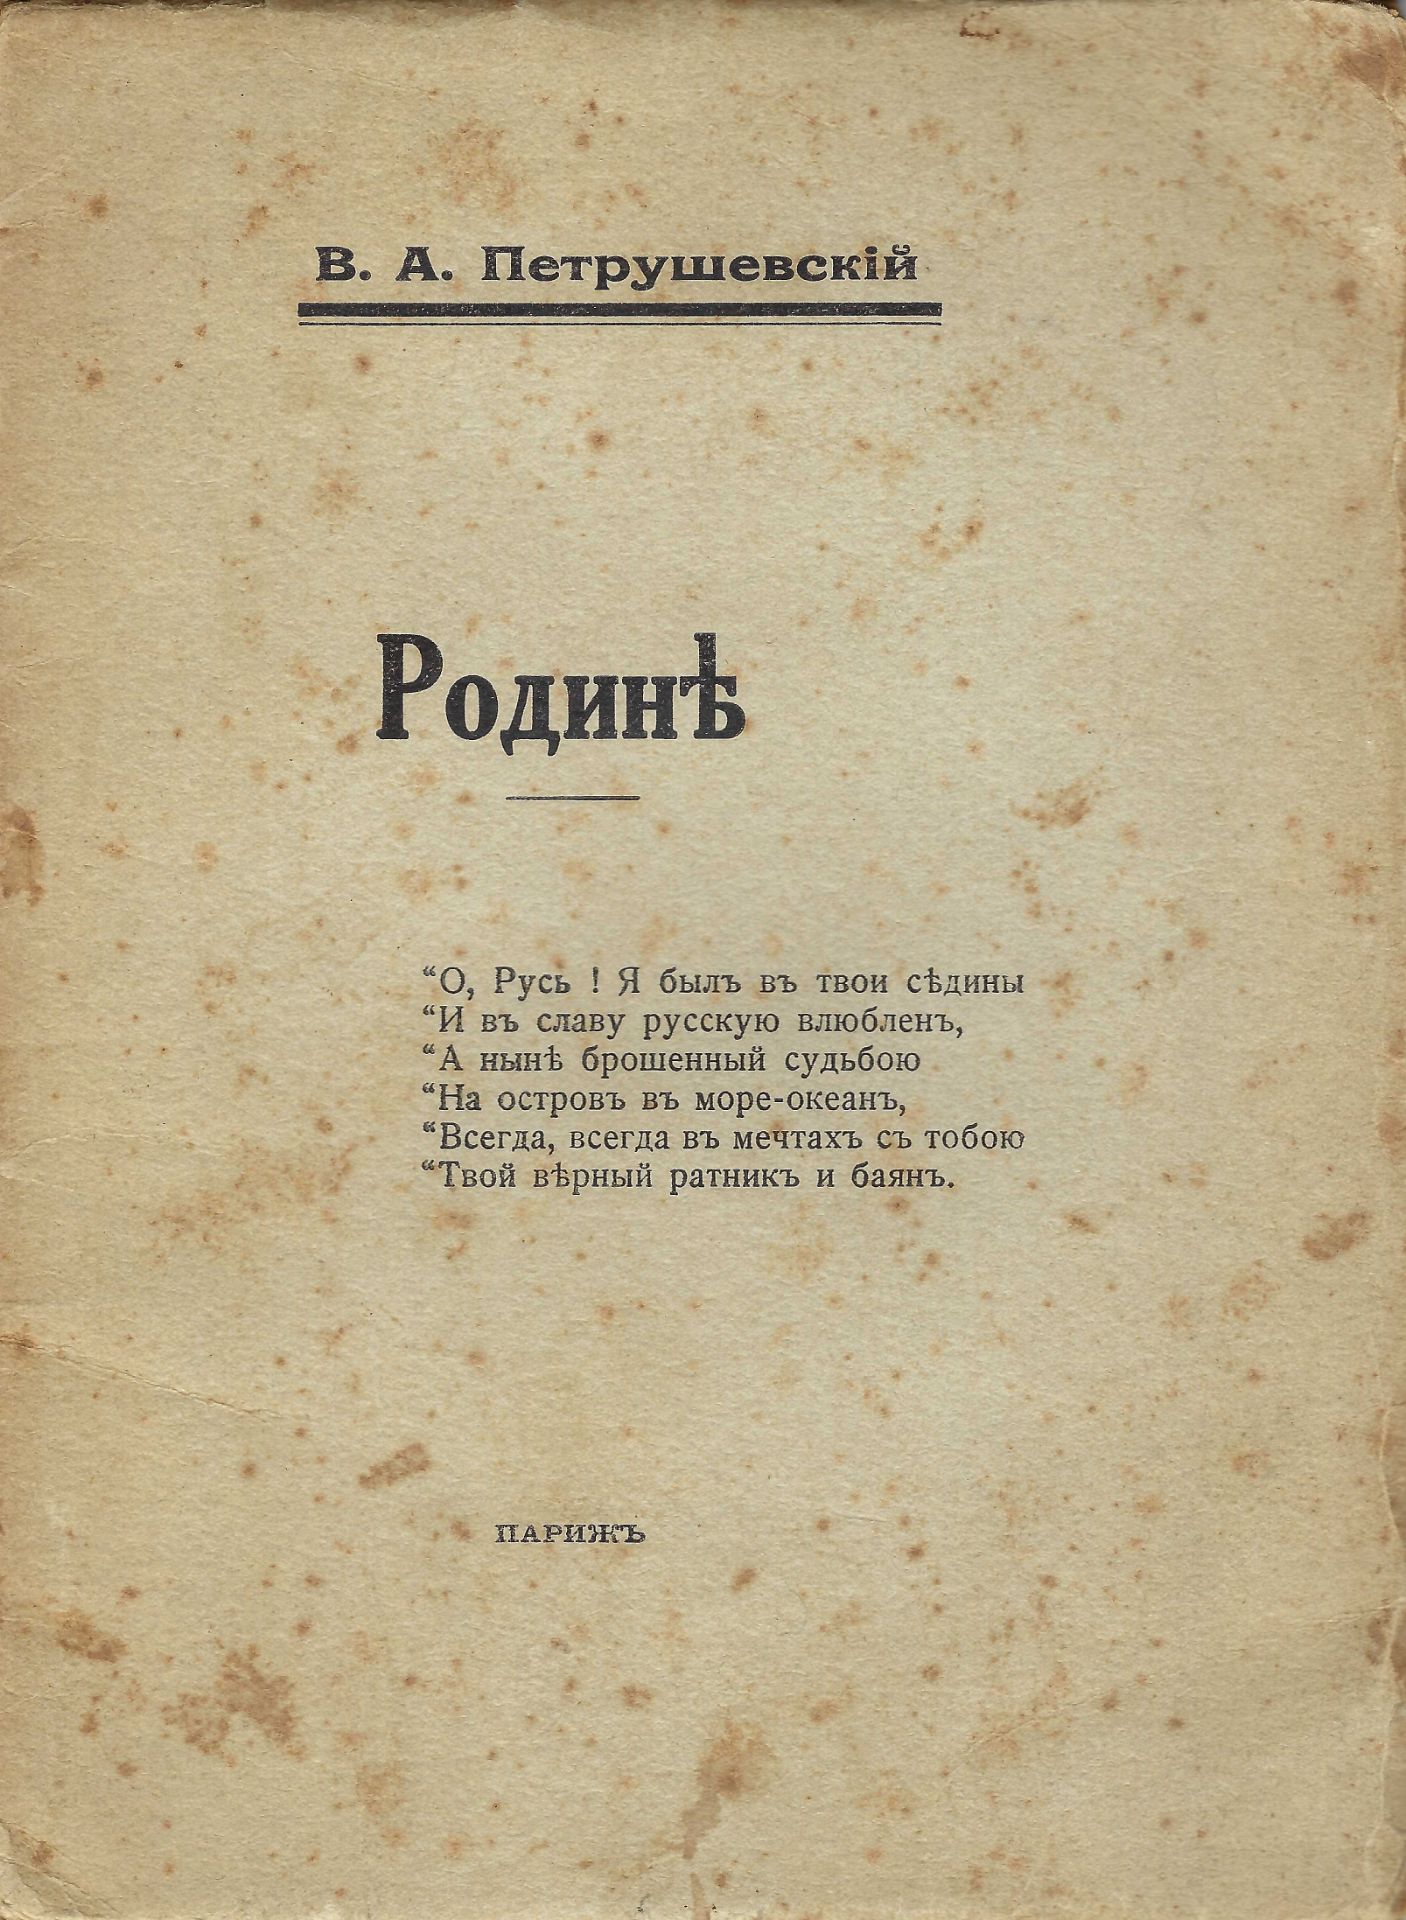 [REGIMENT IZIUMSKI] ARCHIVES d’Andreï BALASHOV (1889-1969) PETROUSHEVSKI Vladimir (1891-1961), poète